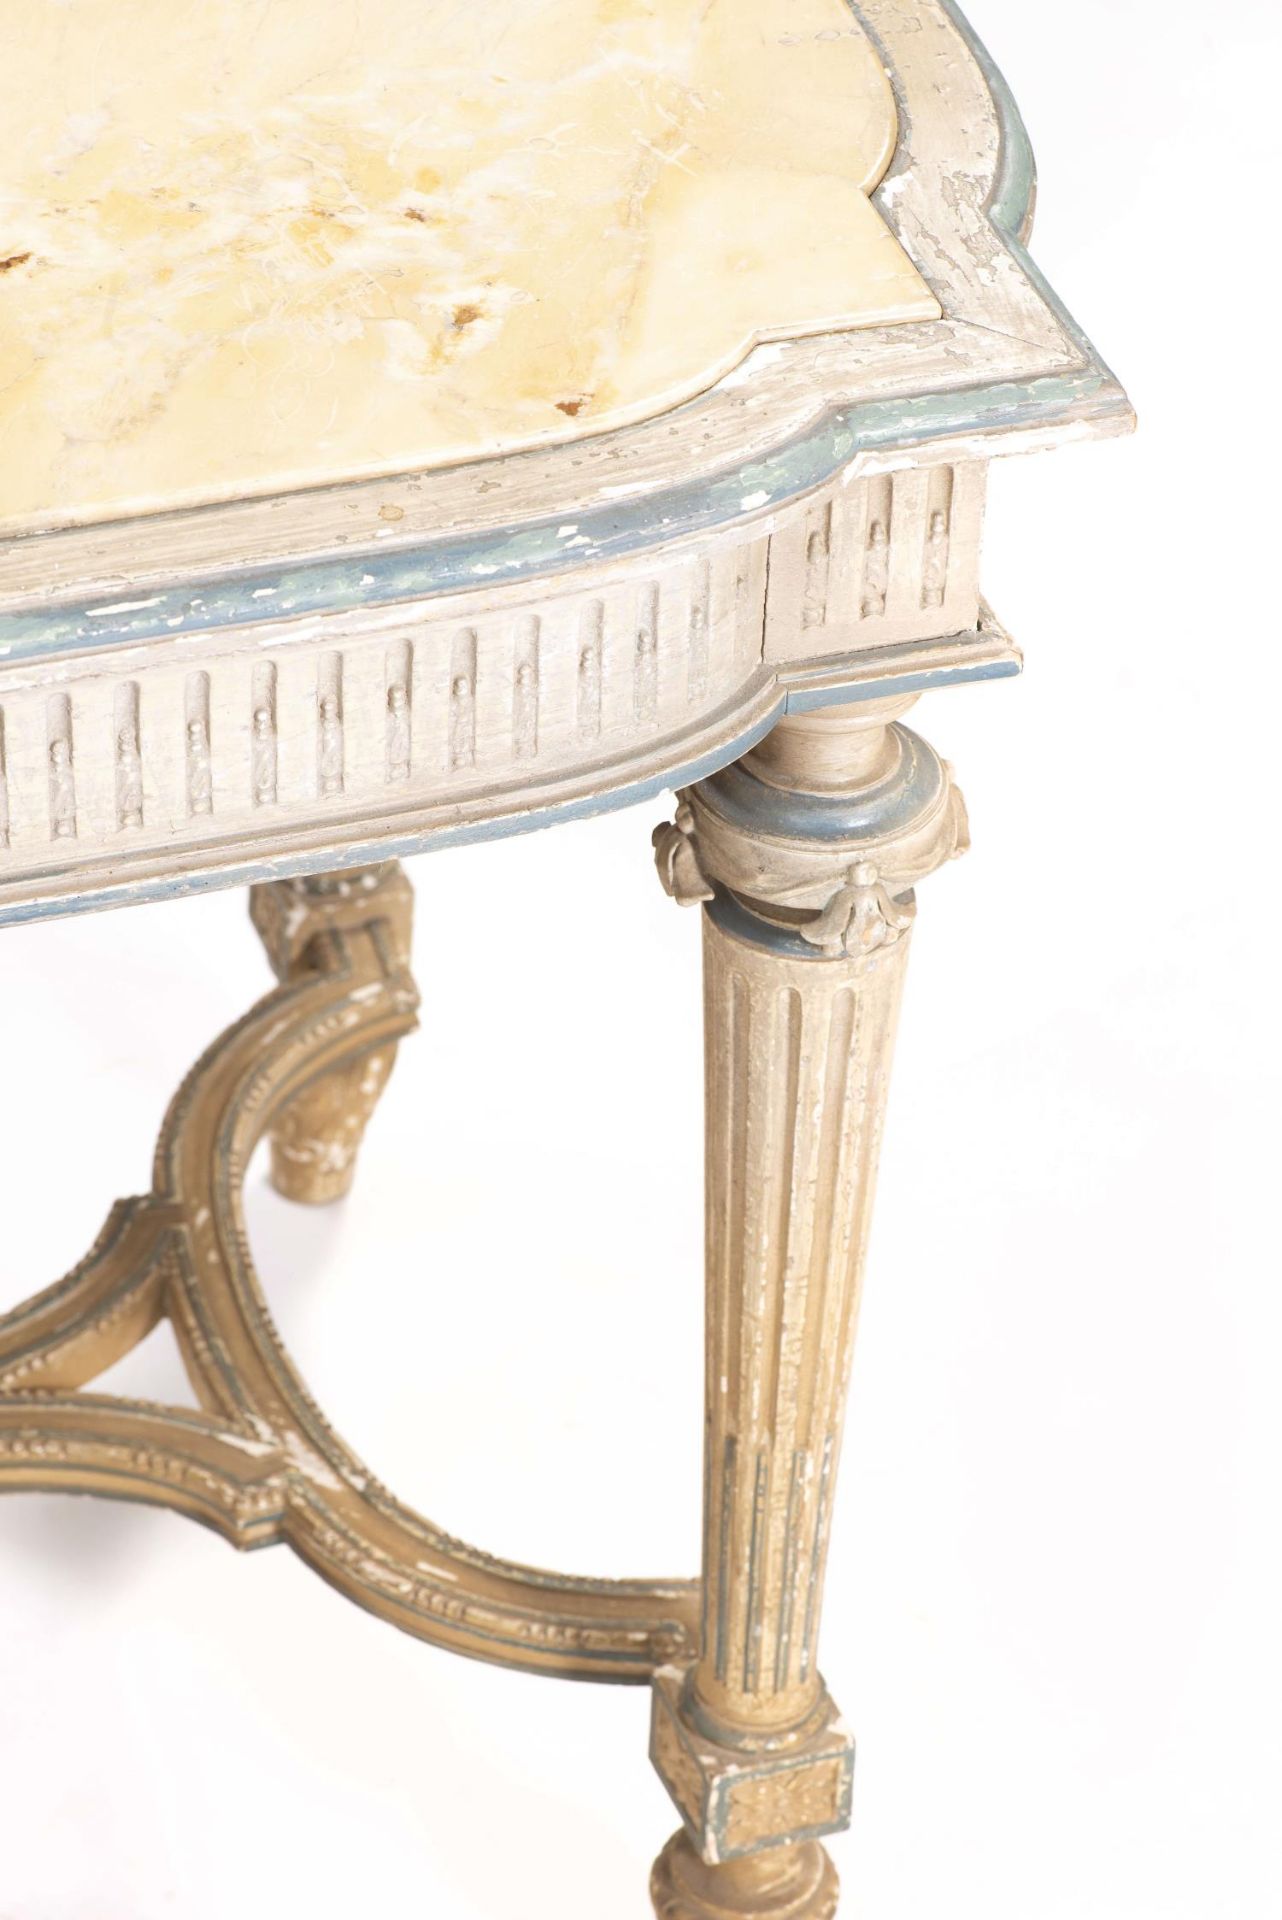 Table de chasse de style Louis XVI avec plateau de marbre jaune - Table de chasse de [...] - Bild 2 aus 4